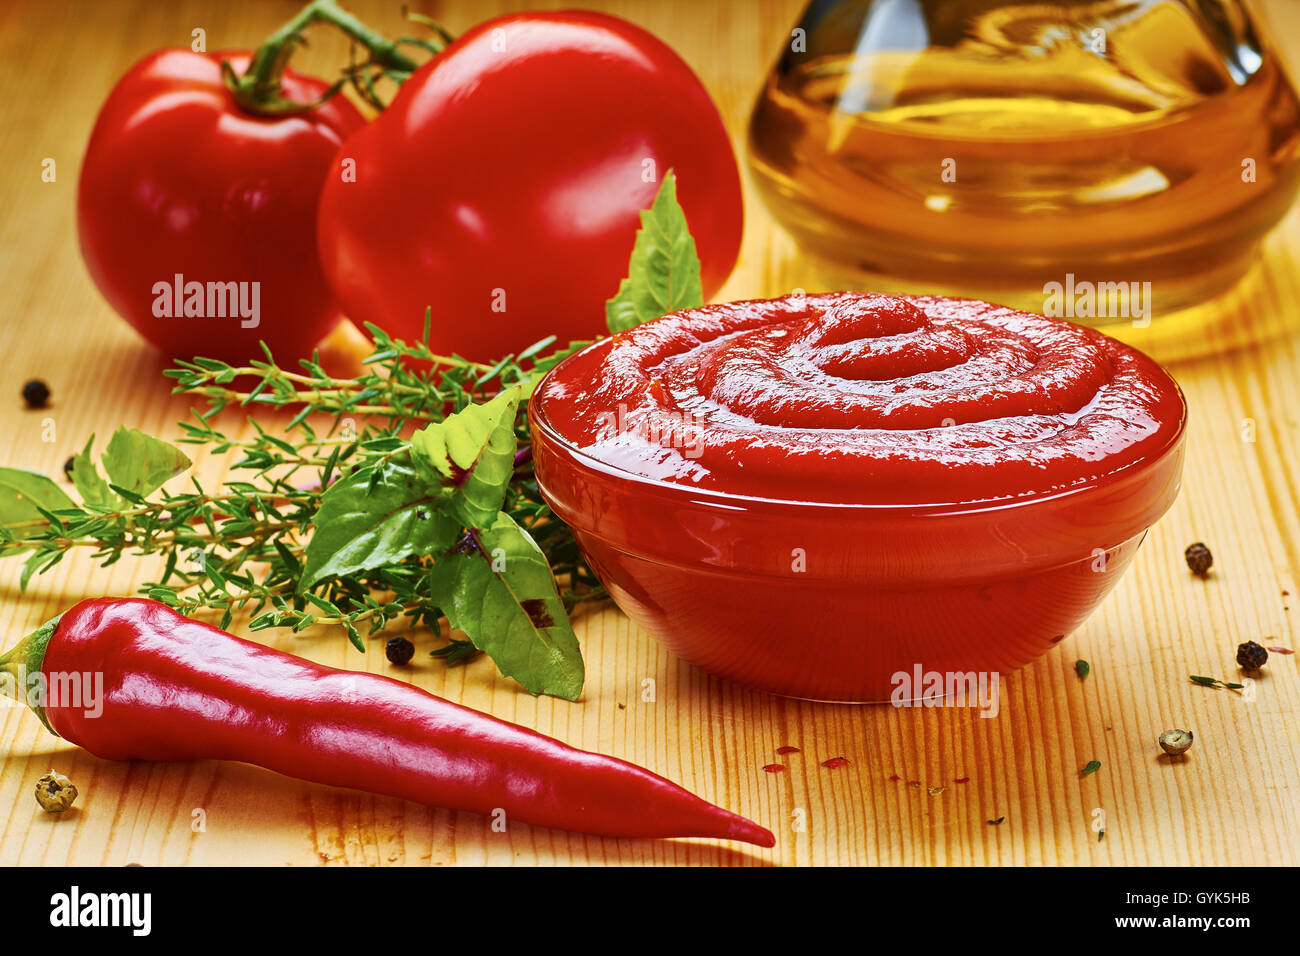 Лук томатная паста масло. Томатная паста кетчуп. Кетчупы с добавками. Соус острый перчик кетчуп. Натуральный домашний кетчуп.